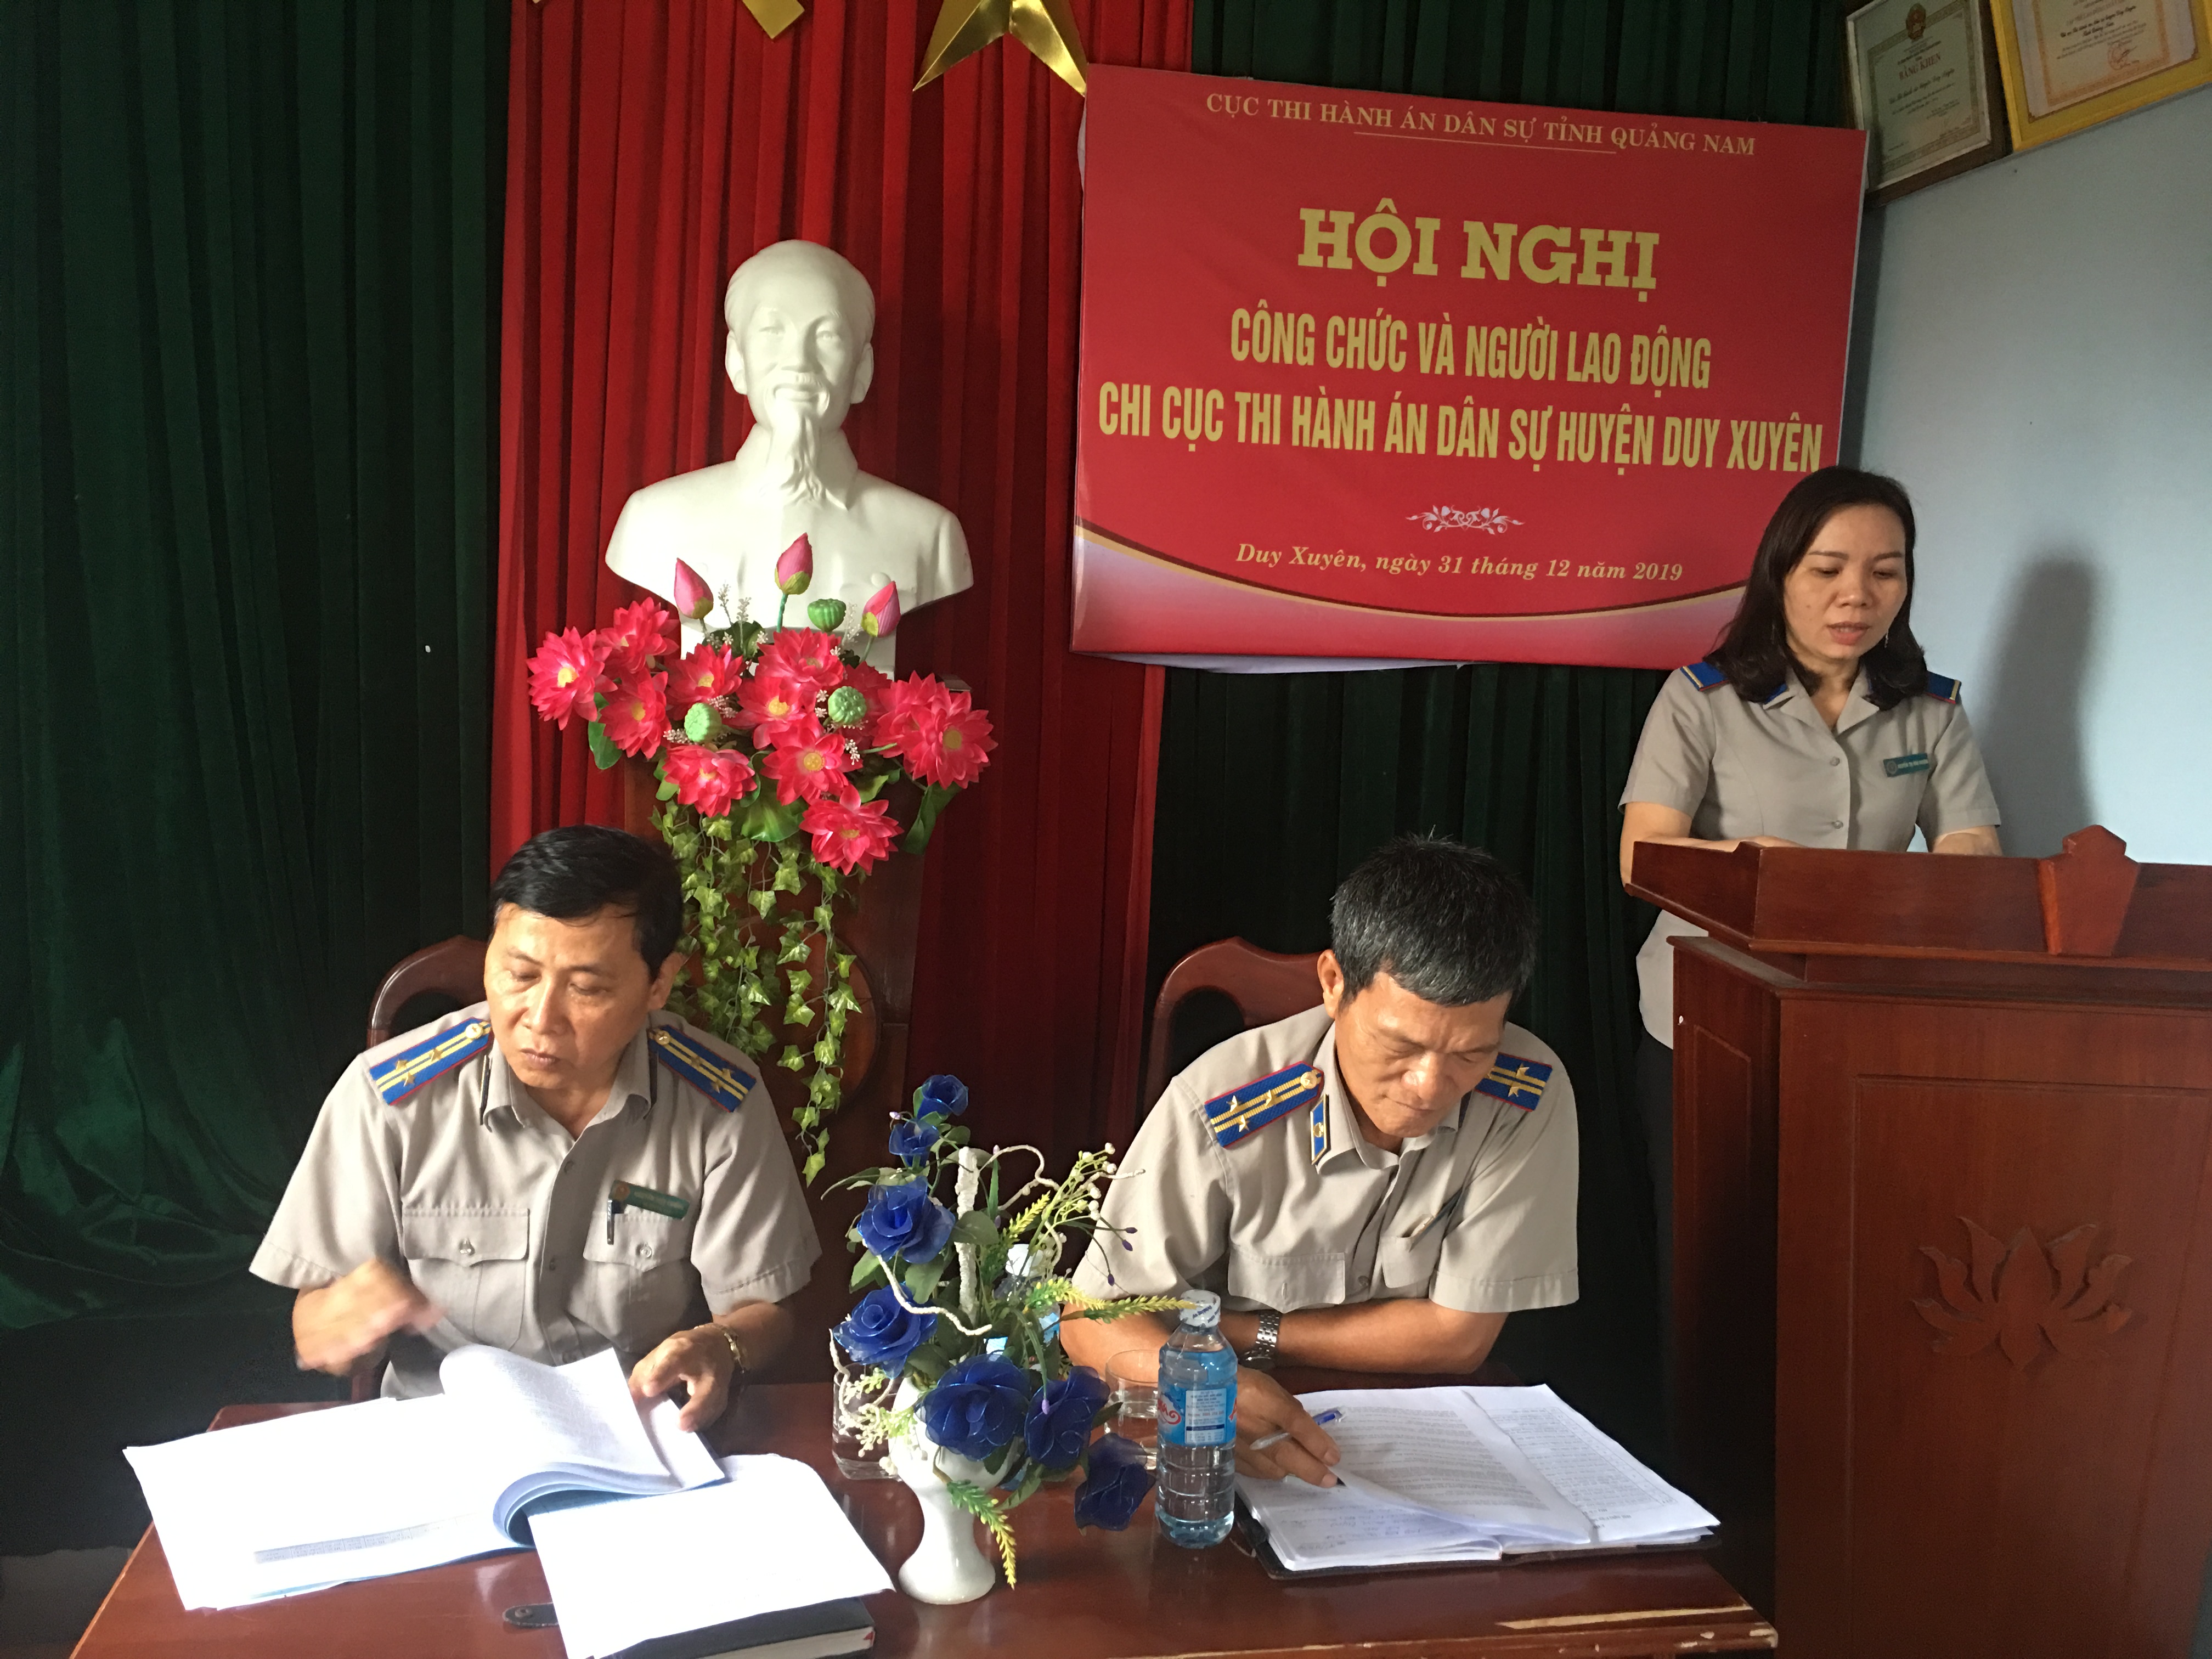 Sáng ngày 31/12/2019 Chi cục THADS huyện Duy Xuyên tổ chức hội nghị công chức và người lao động năm 2020